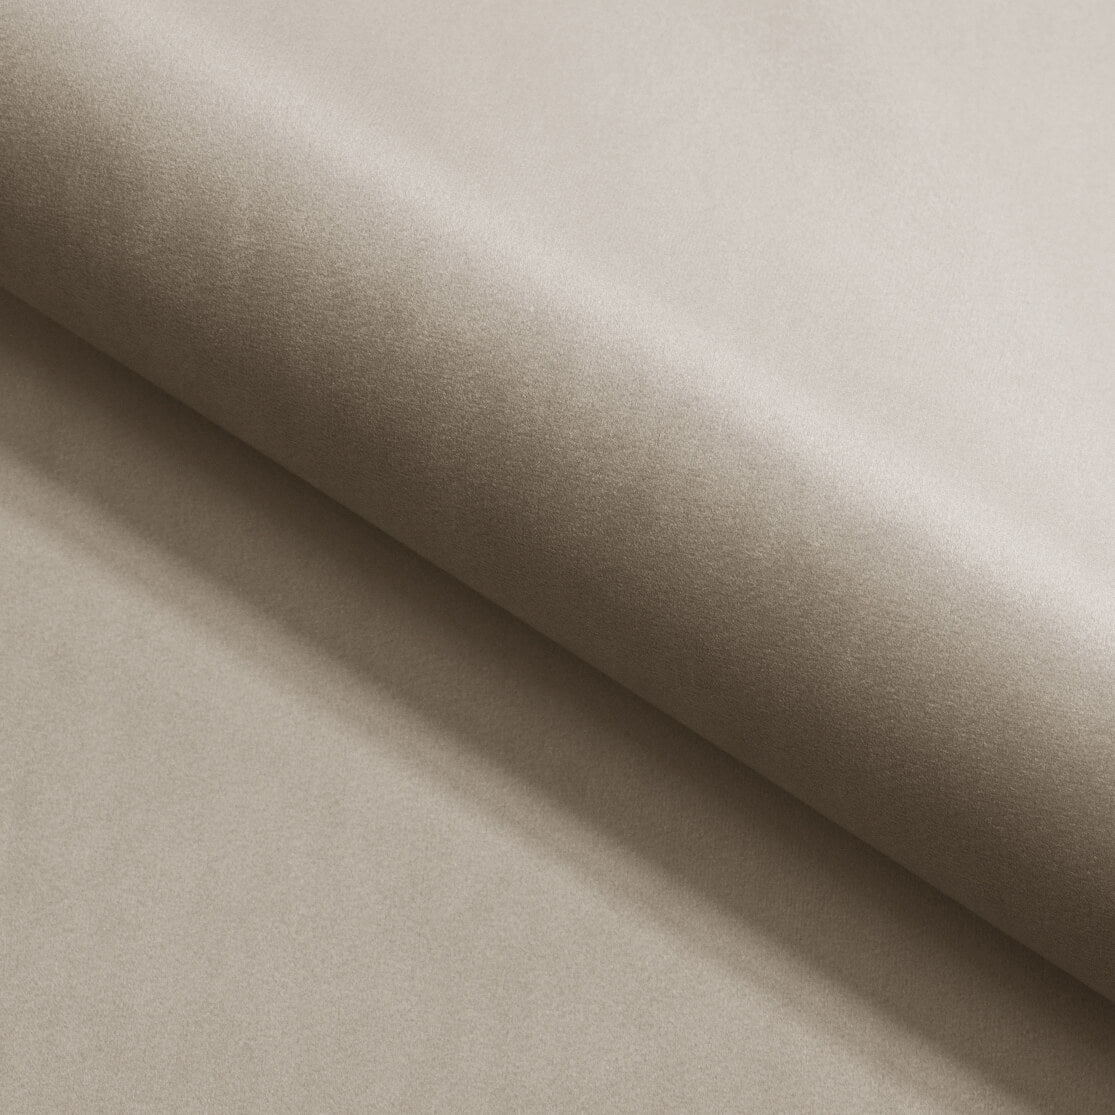 Zdjęcie przedstawiające detale tkaniny Riviera 16. Beżowa tkanina Riviera jest dostępna w łóżku kontynentalnym dream 180x200 cm w promocyjnej cenie